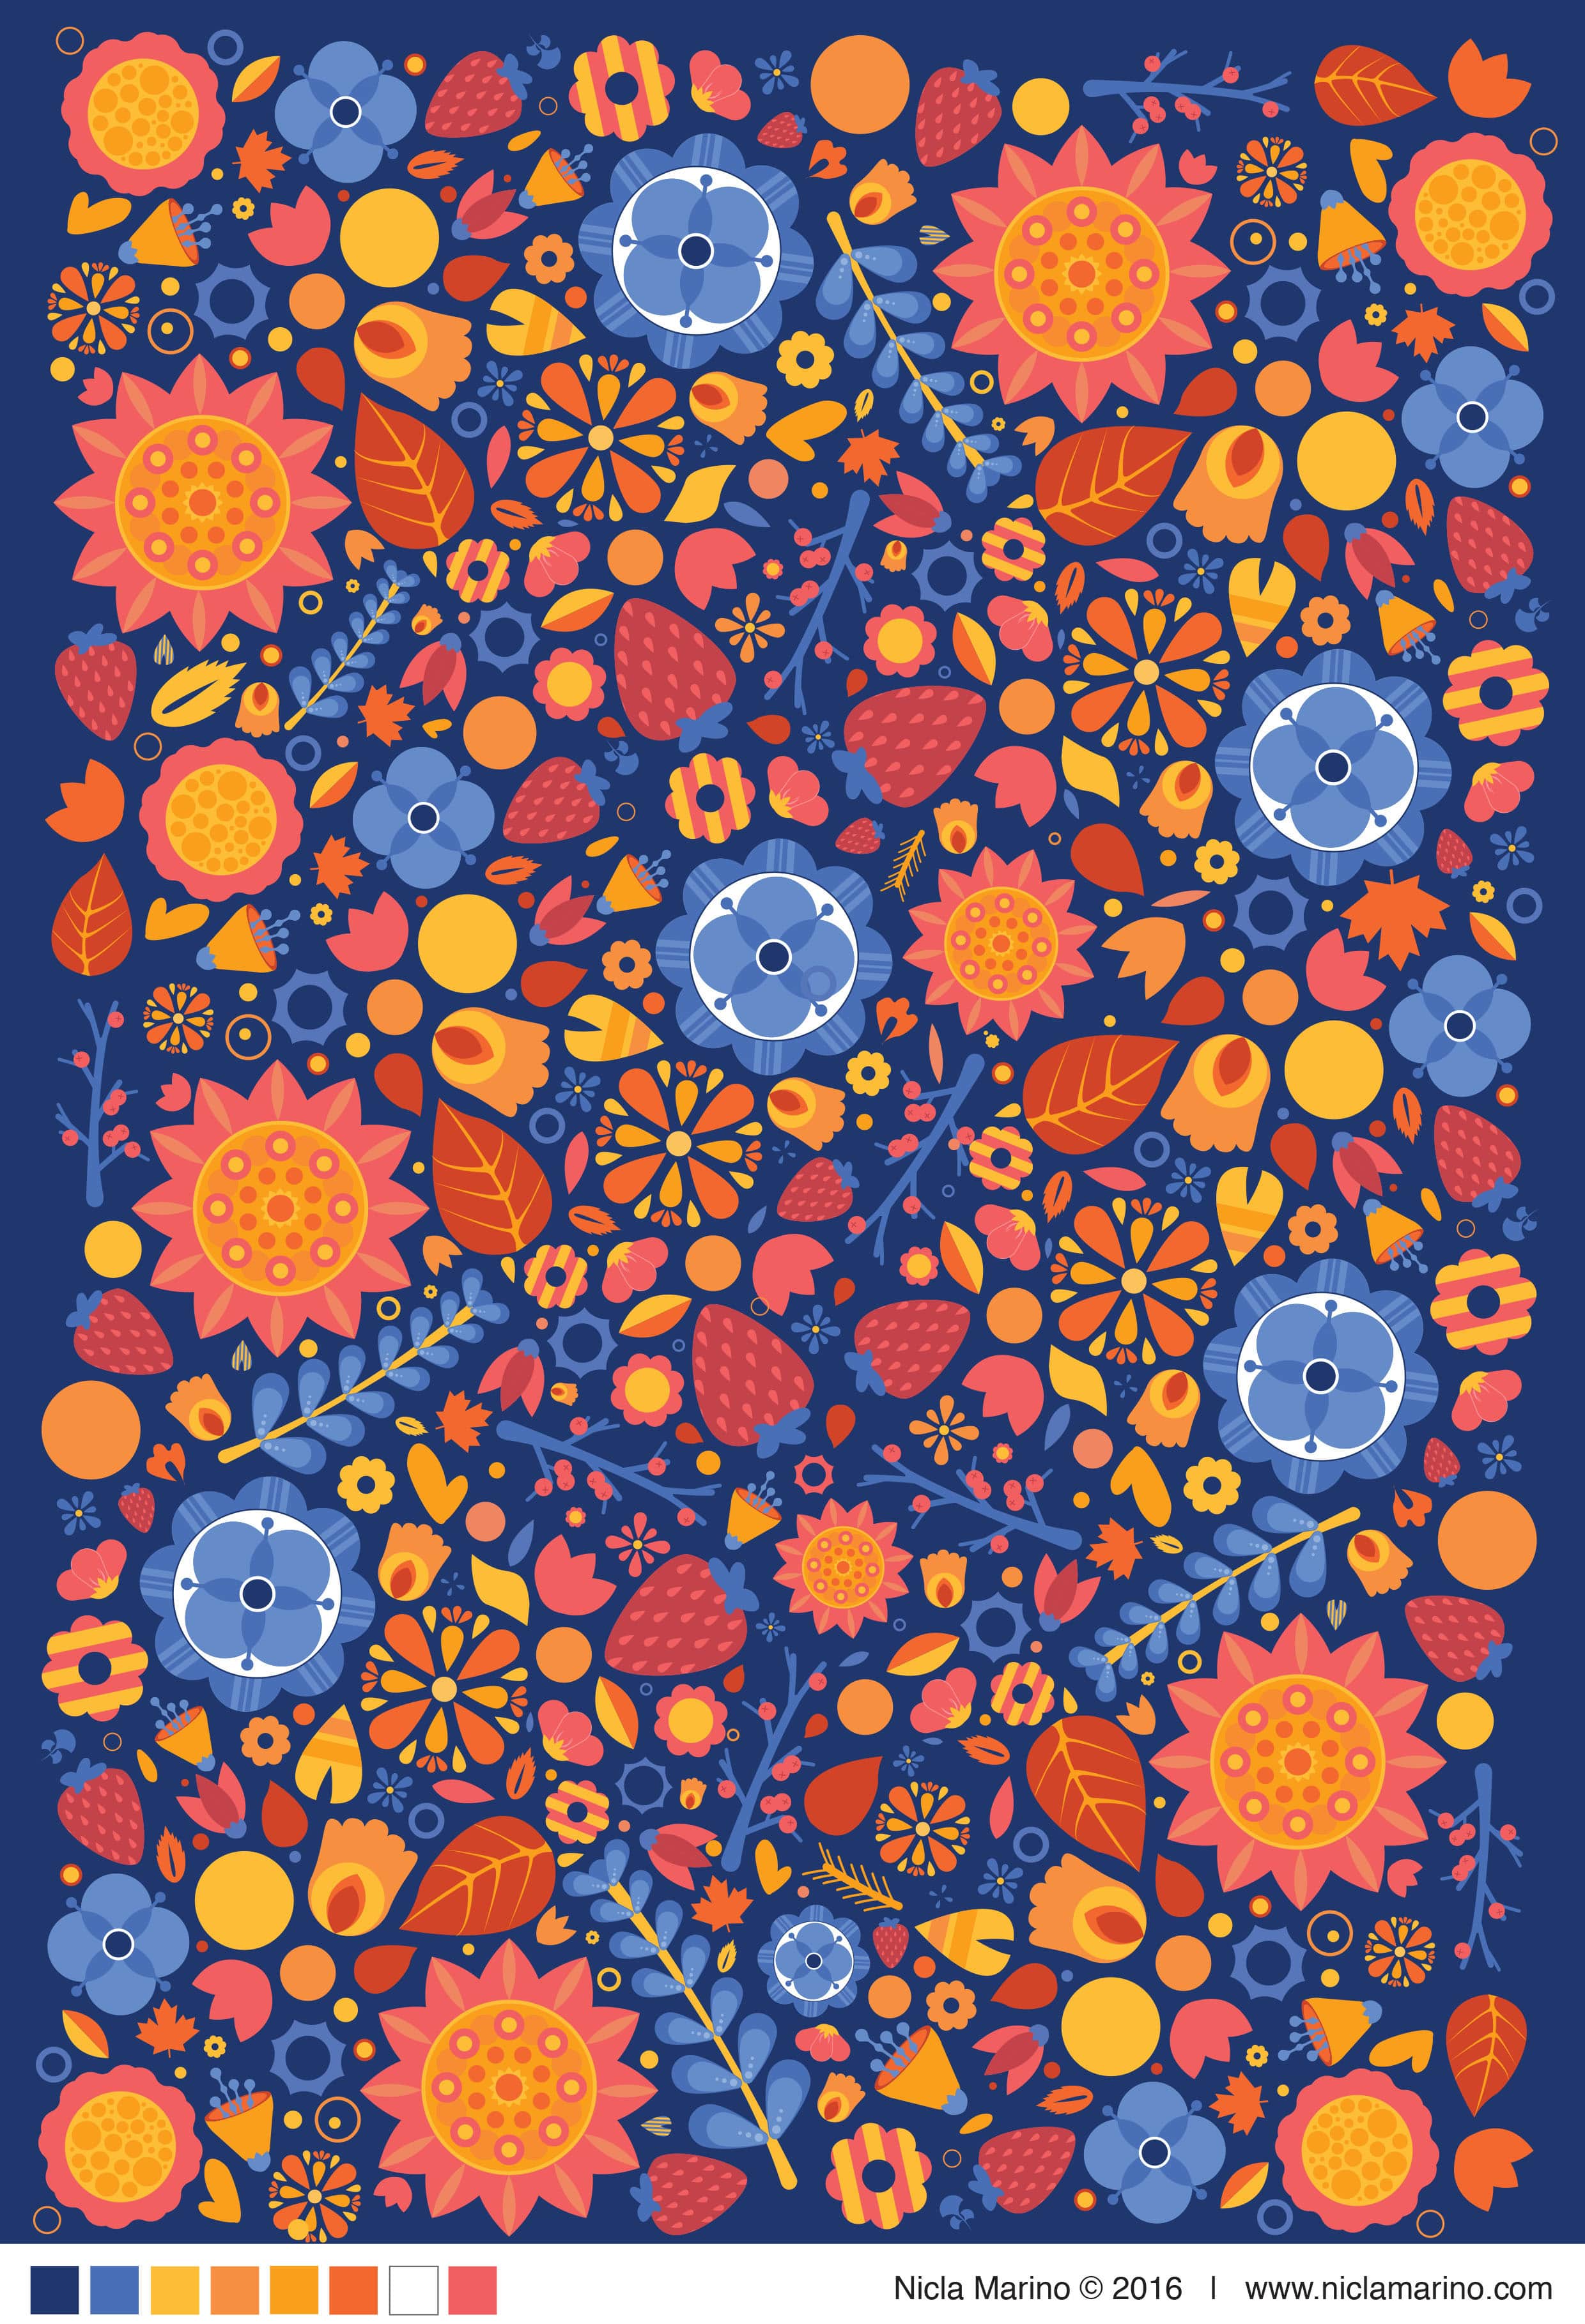 nicla-marino-floral-pattern-01-min